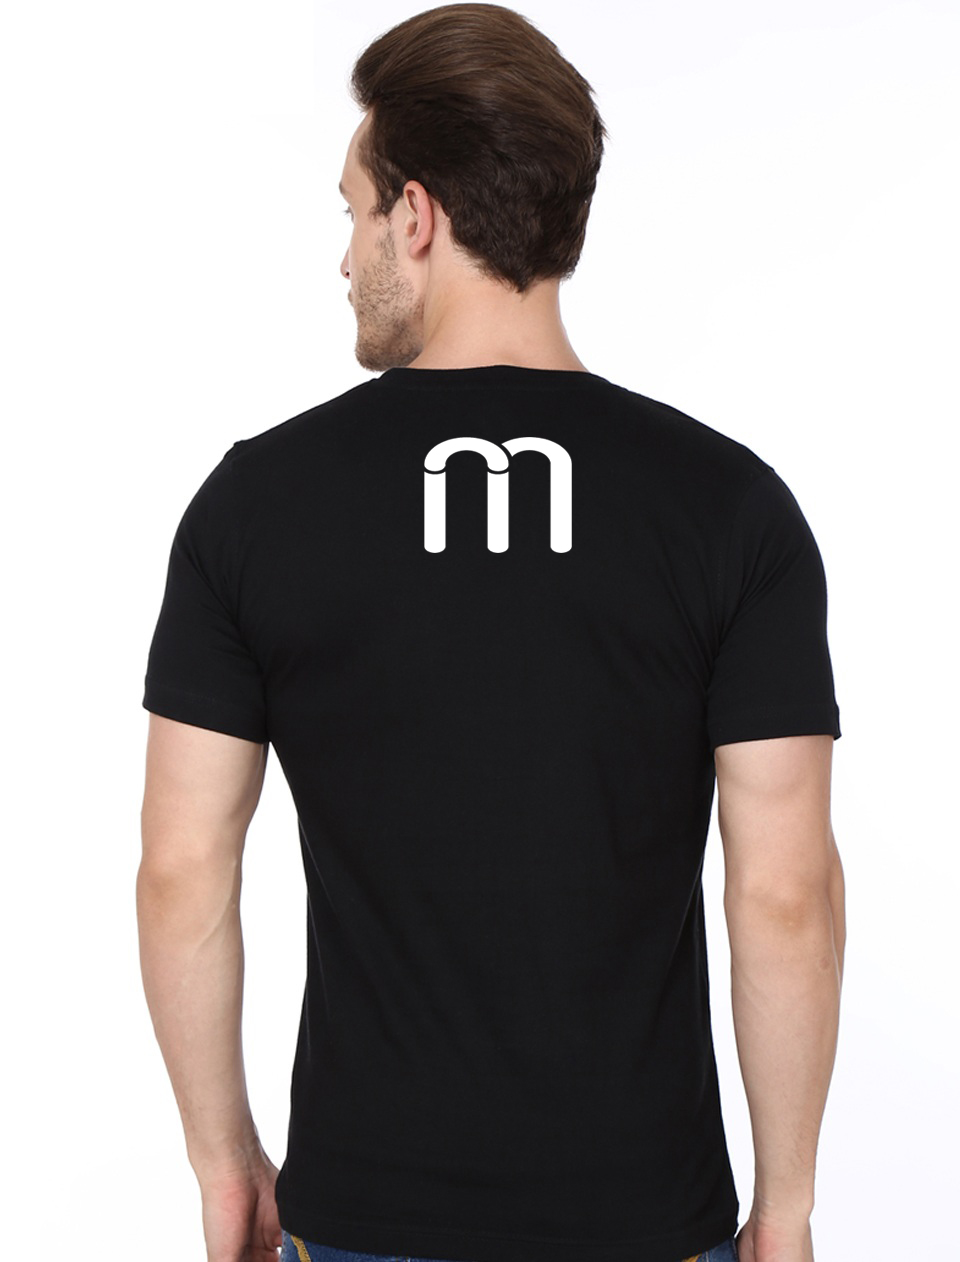 Mantalus T-Shirt - Swag Shirts